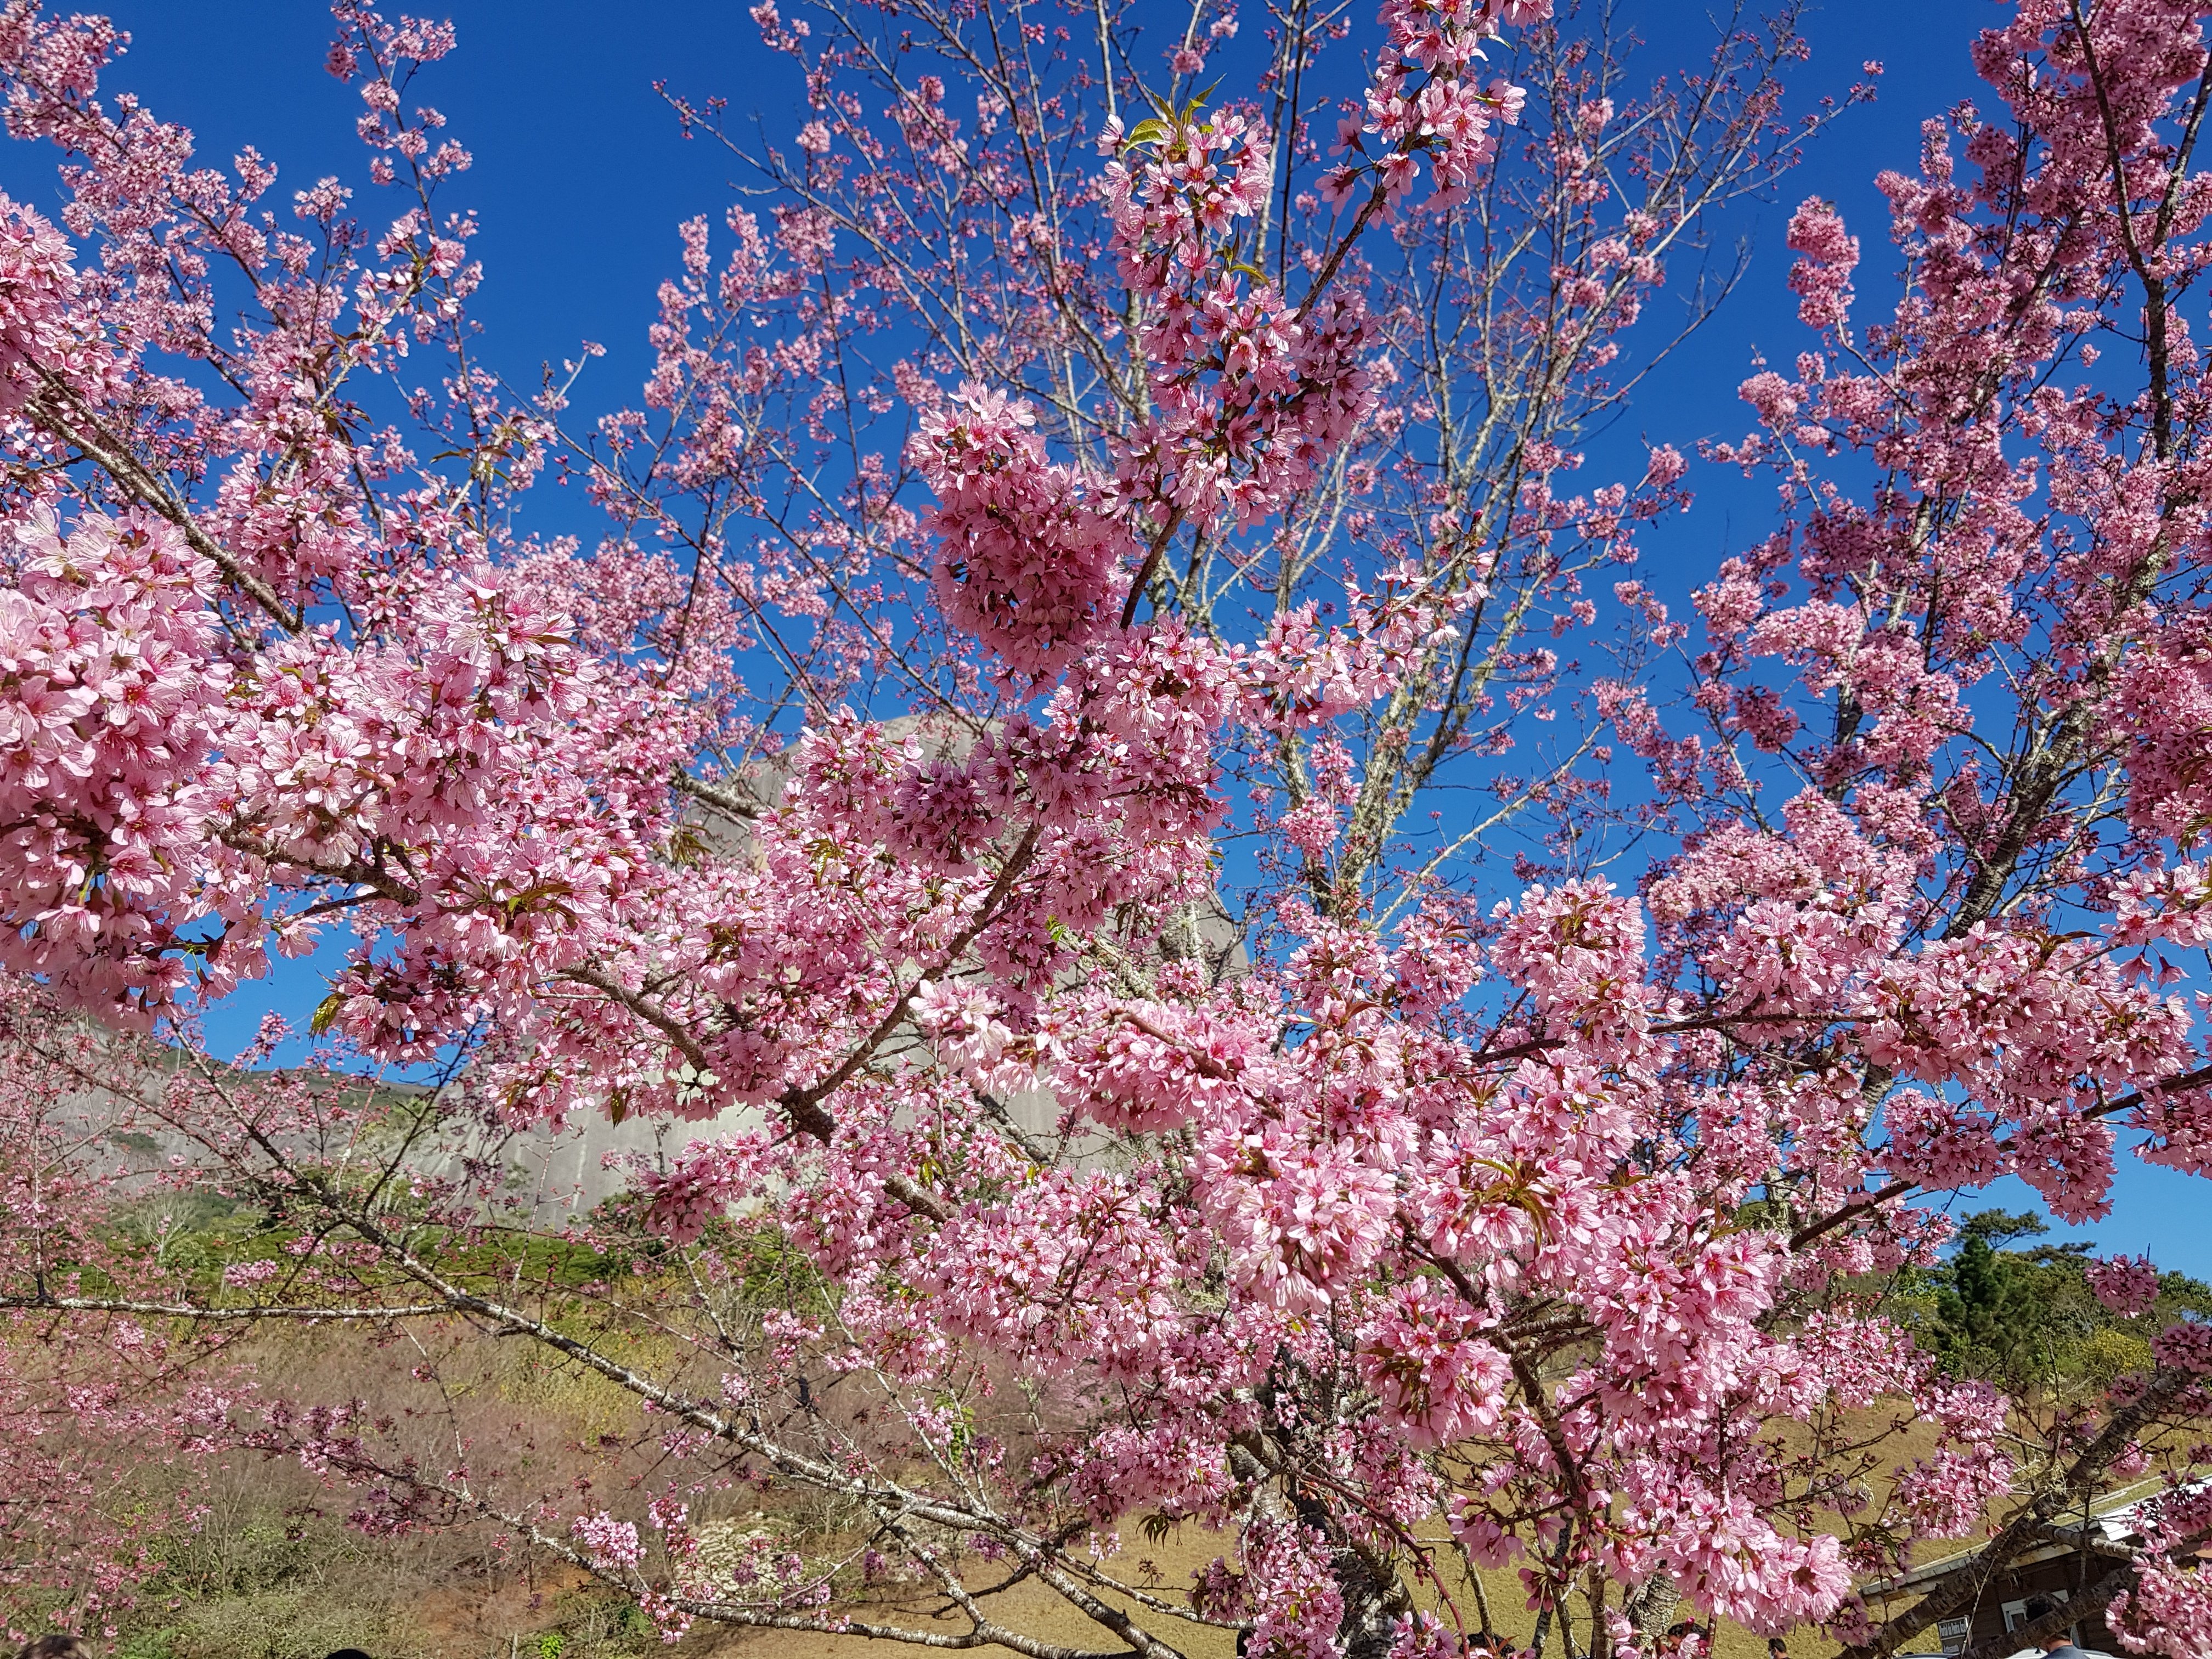 Bosque das Cerejeiras floriu na segunda quinzena de julho neste ano